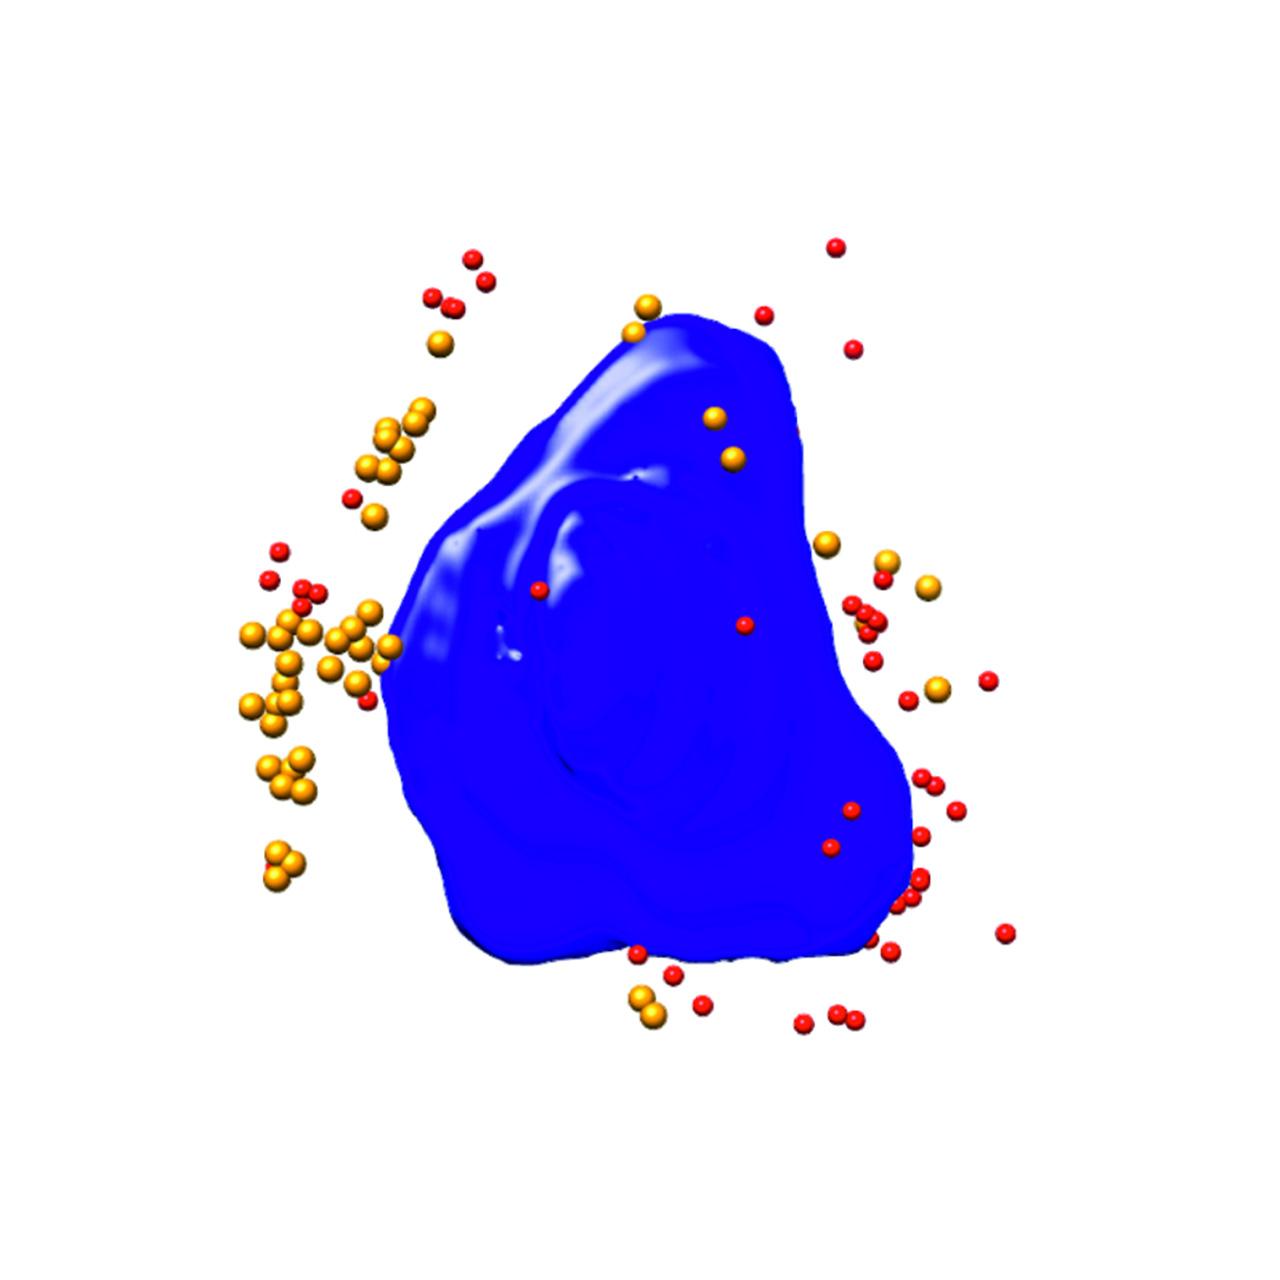 感染病毒的Ptk2细胞的分割三维渲染。蓝色：细胞核，红色/橙色：病毒颗粒；细胞宽度约10 µm；Xradia 825 Synchrotron。图像提供者：西班牙马德里国家生物技术中心和ALBA同步辐射光源的F.J. Chichon。